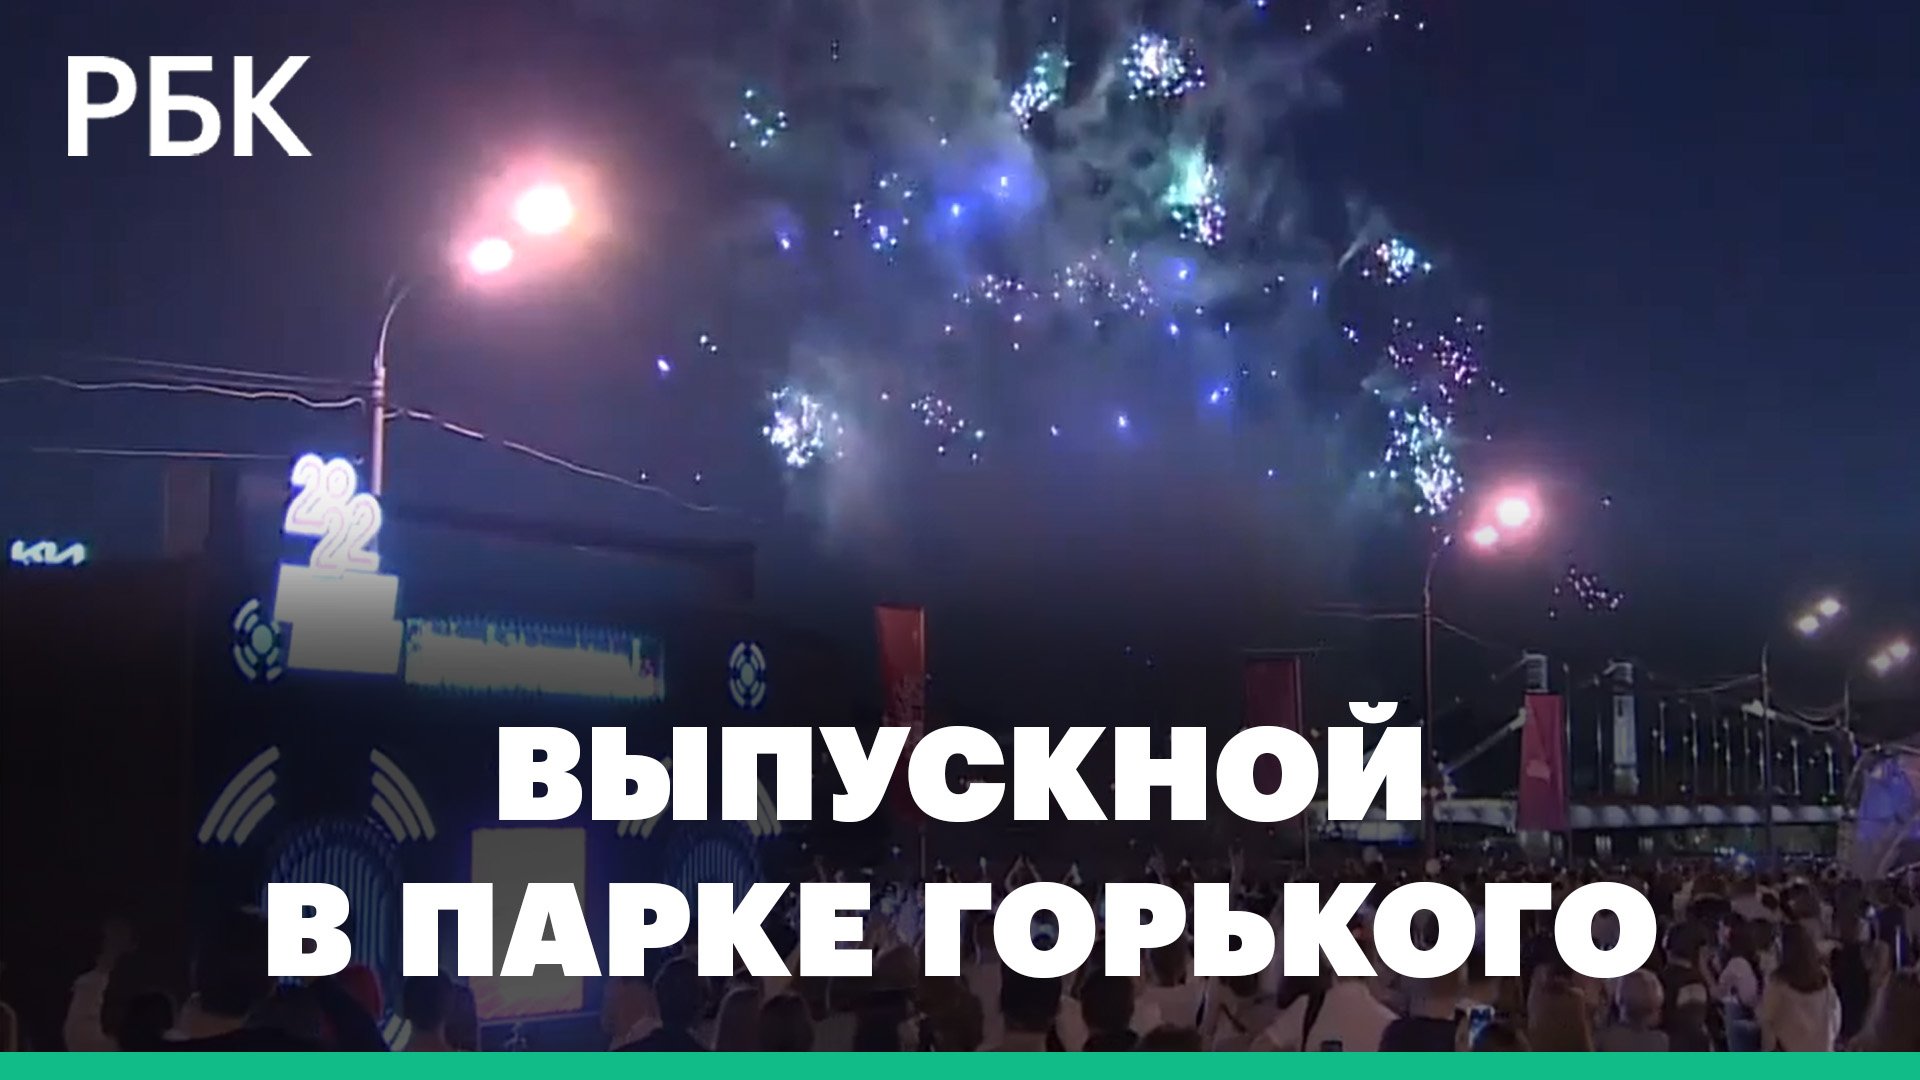 Тысячи школьников отметили выпускной в Парке Горького в Москве